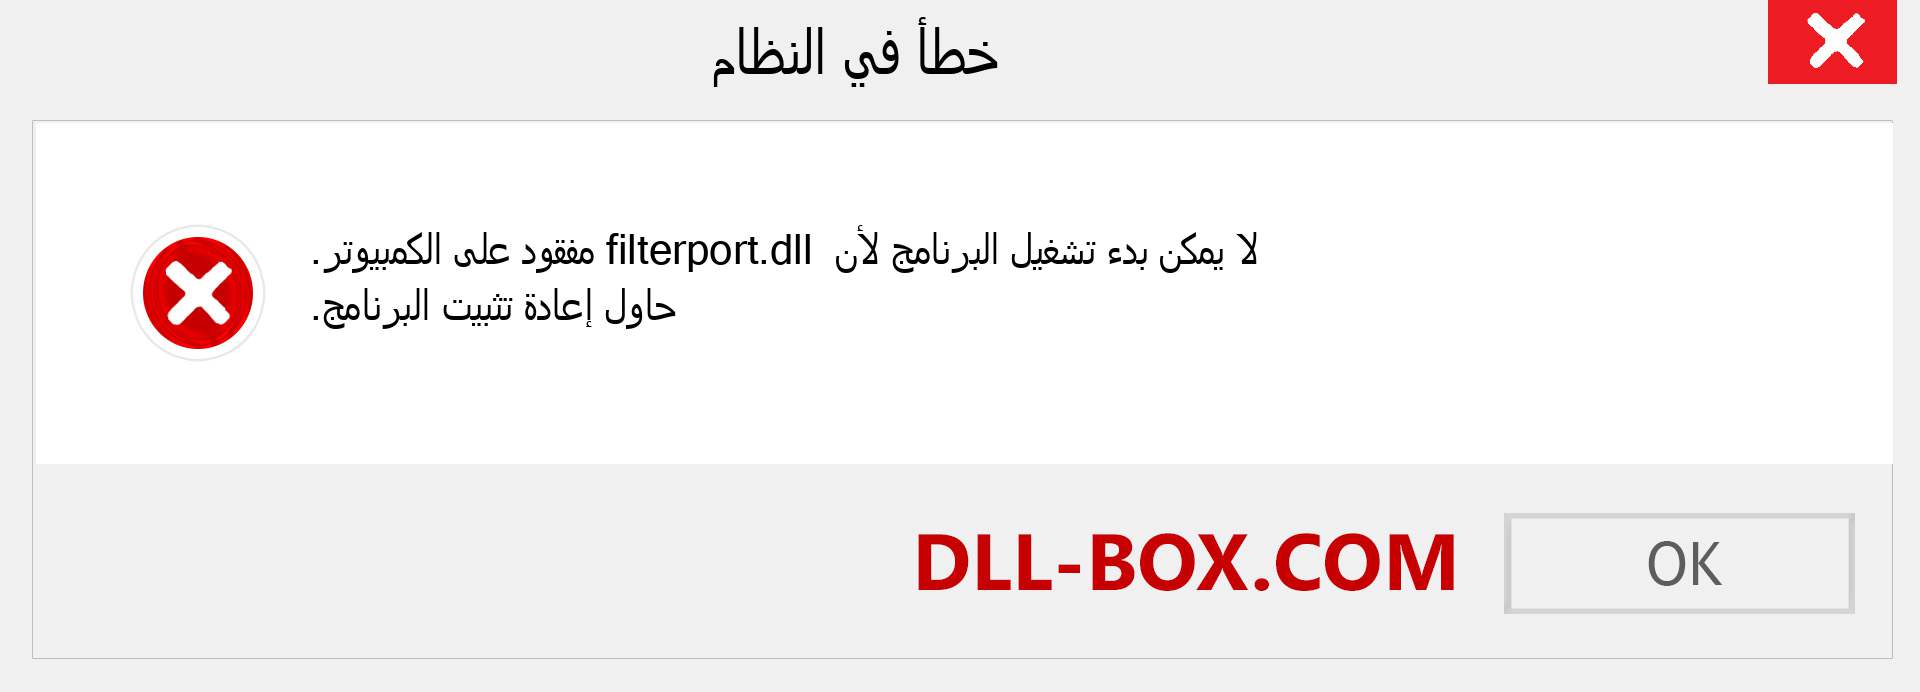 ملف filterport.dll مفقود ؟. التنزيل لنظام التشغيل Windows 7 و 8 و 10 - إصلاح خطأ filterport dll المفقود على Windows والصور والصور